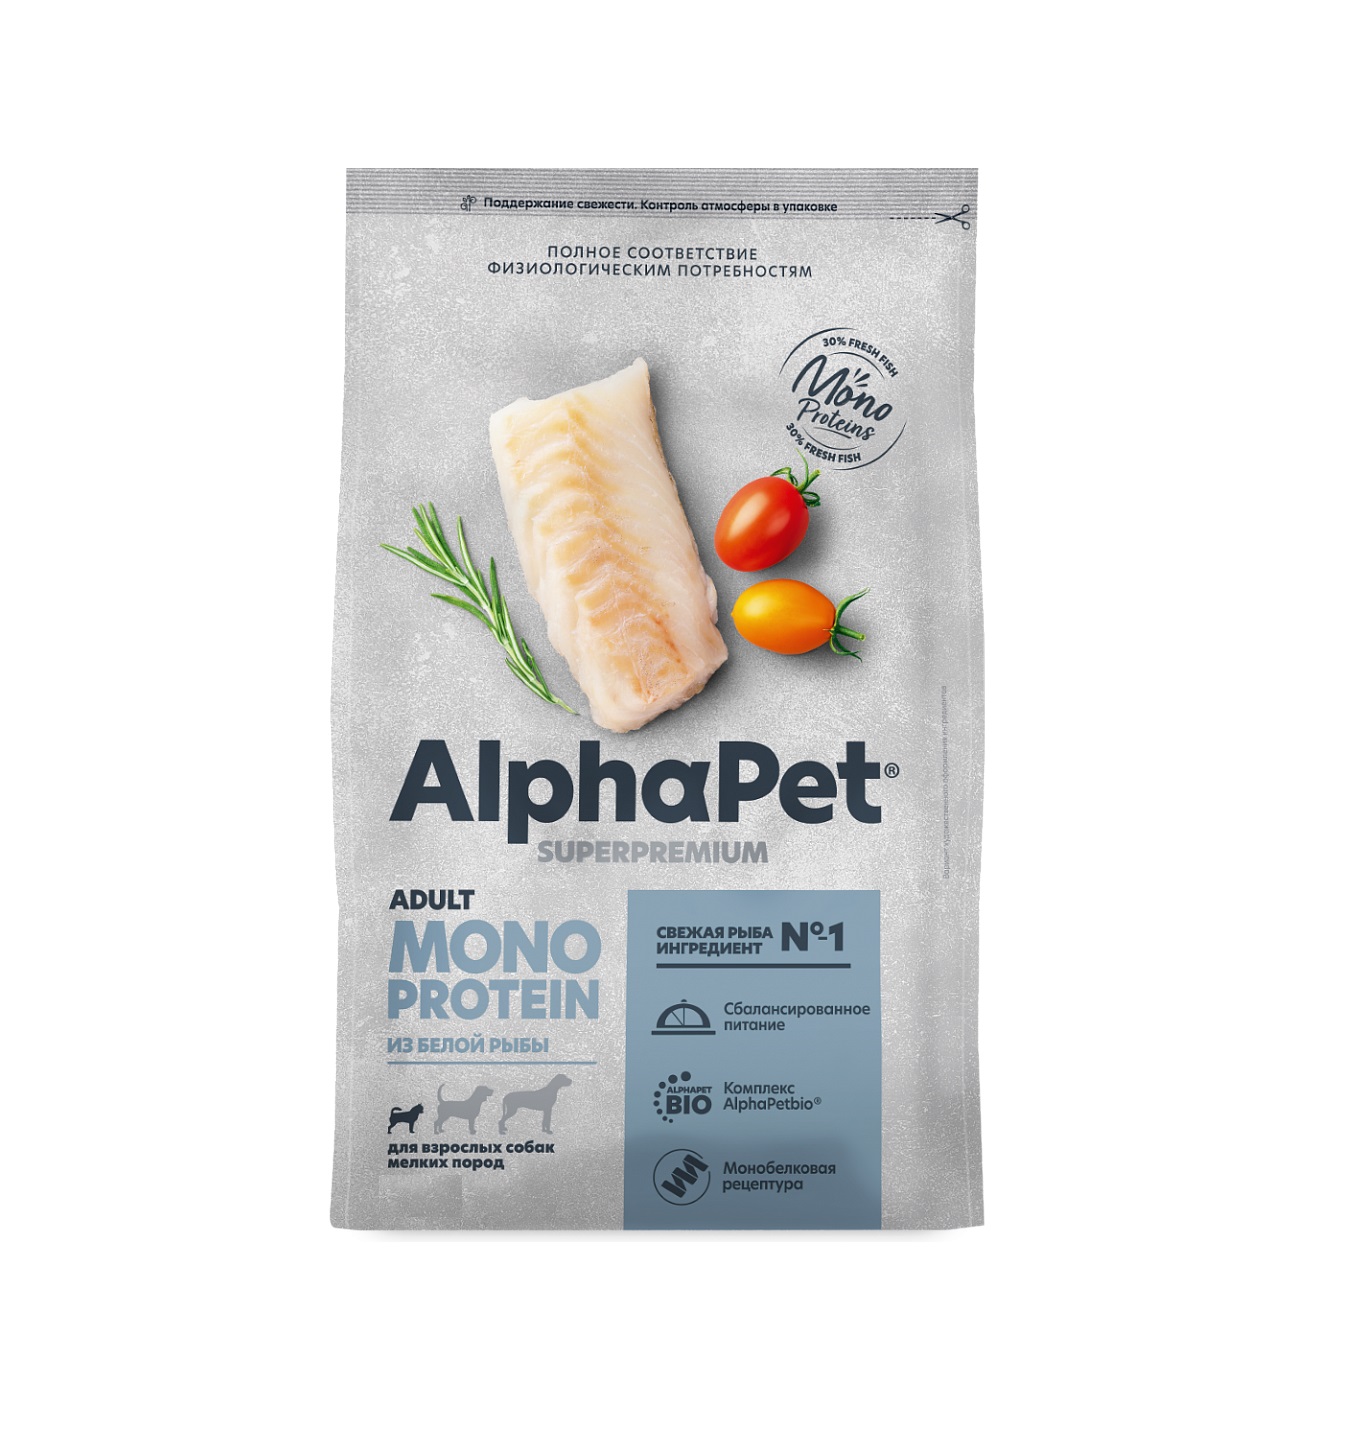 АльфаПет Монопротеин 500гр - для Мелких Собак, Белая Рыба (Alpha Pet Monoprotein) + Подарок